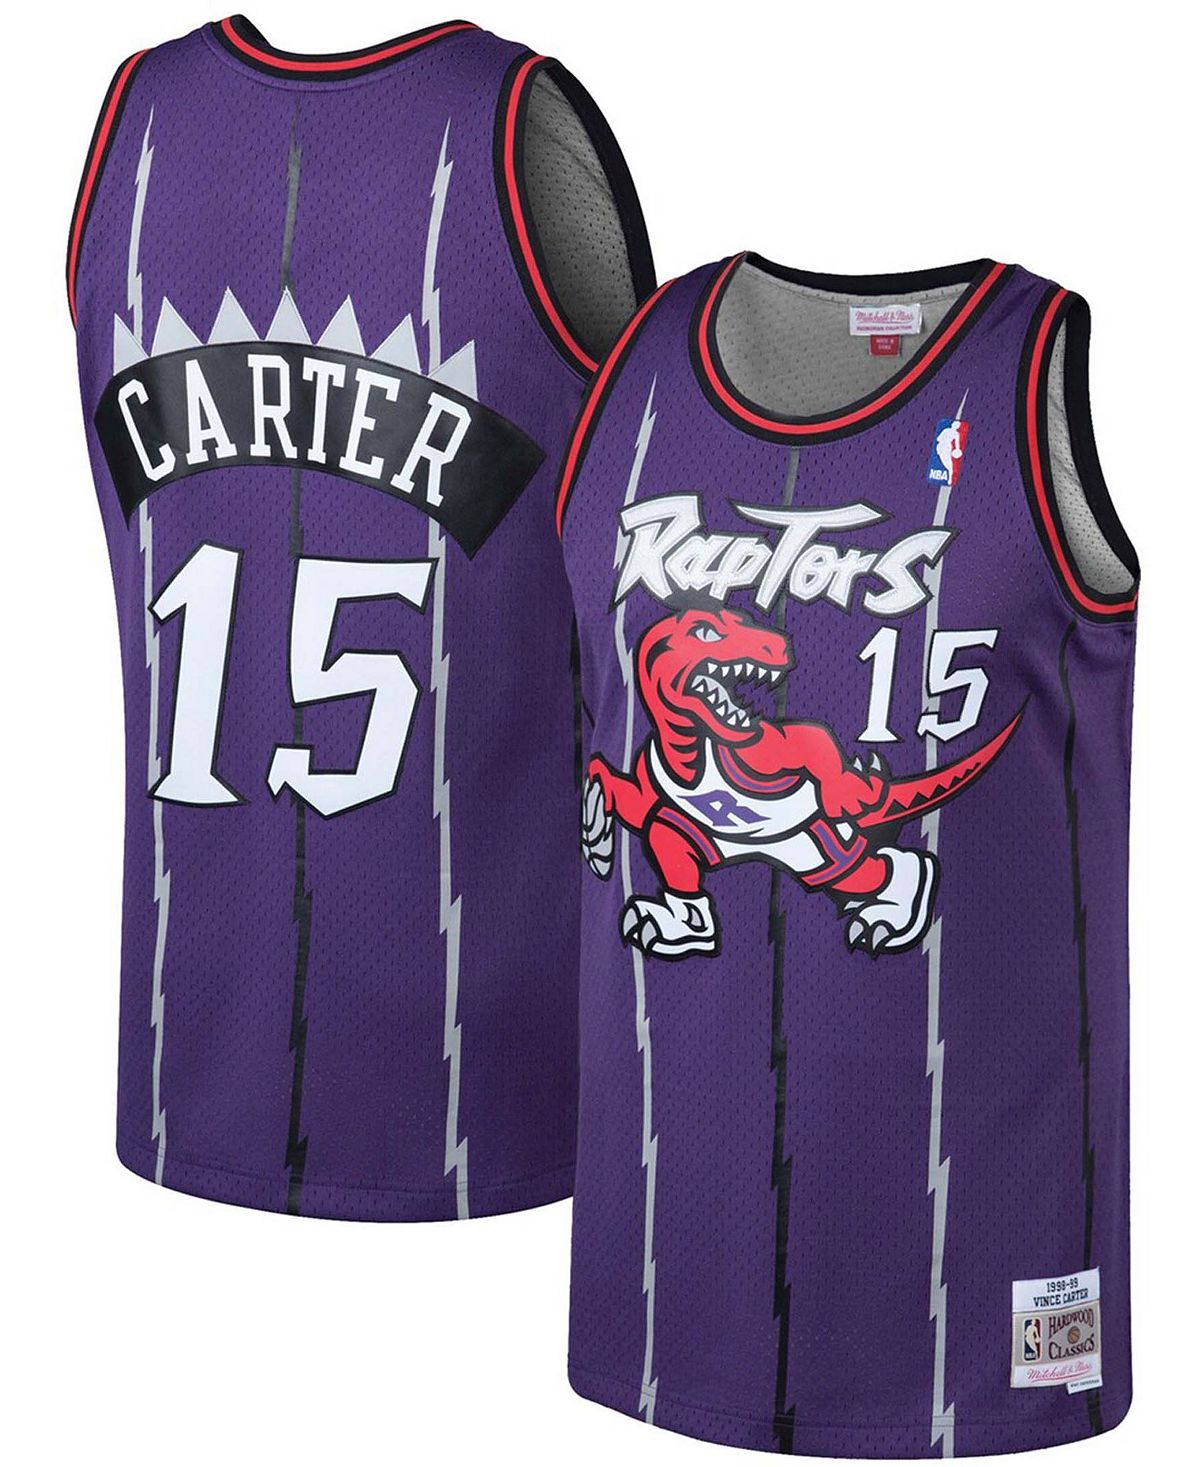 Мужская джерси vince carter purple toronto raptors 1998-99 hardwood classics swingman Mitchell & Ness, фиолетовый toronto raptors